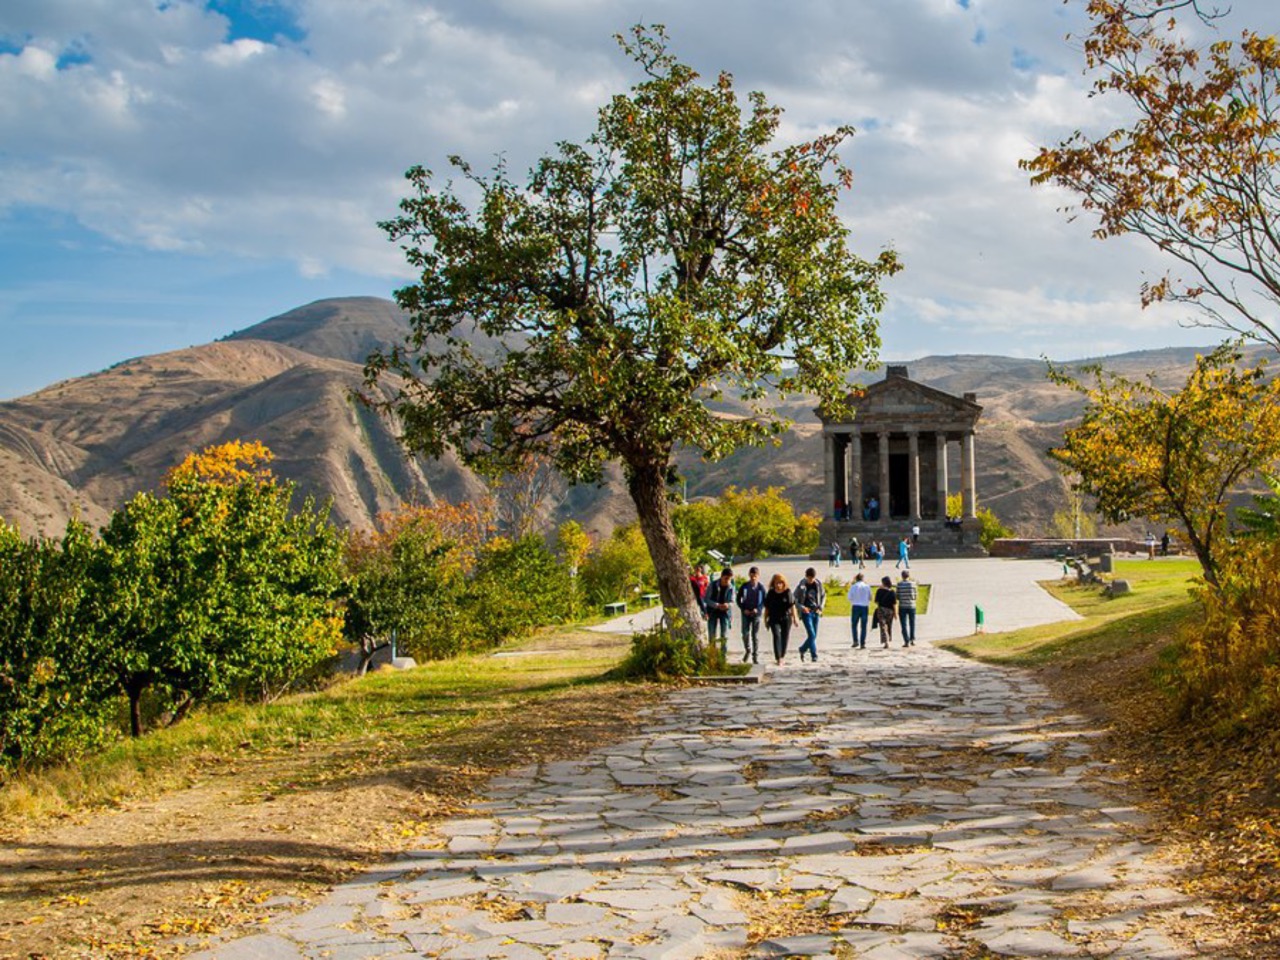 Тур в храм Гарни, монастырь Гегард и к озеру Севан | Цена 200€, отзывы, описание экскурсии